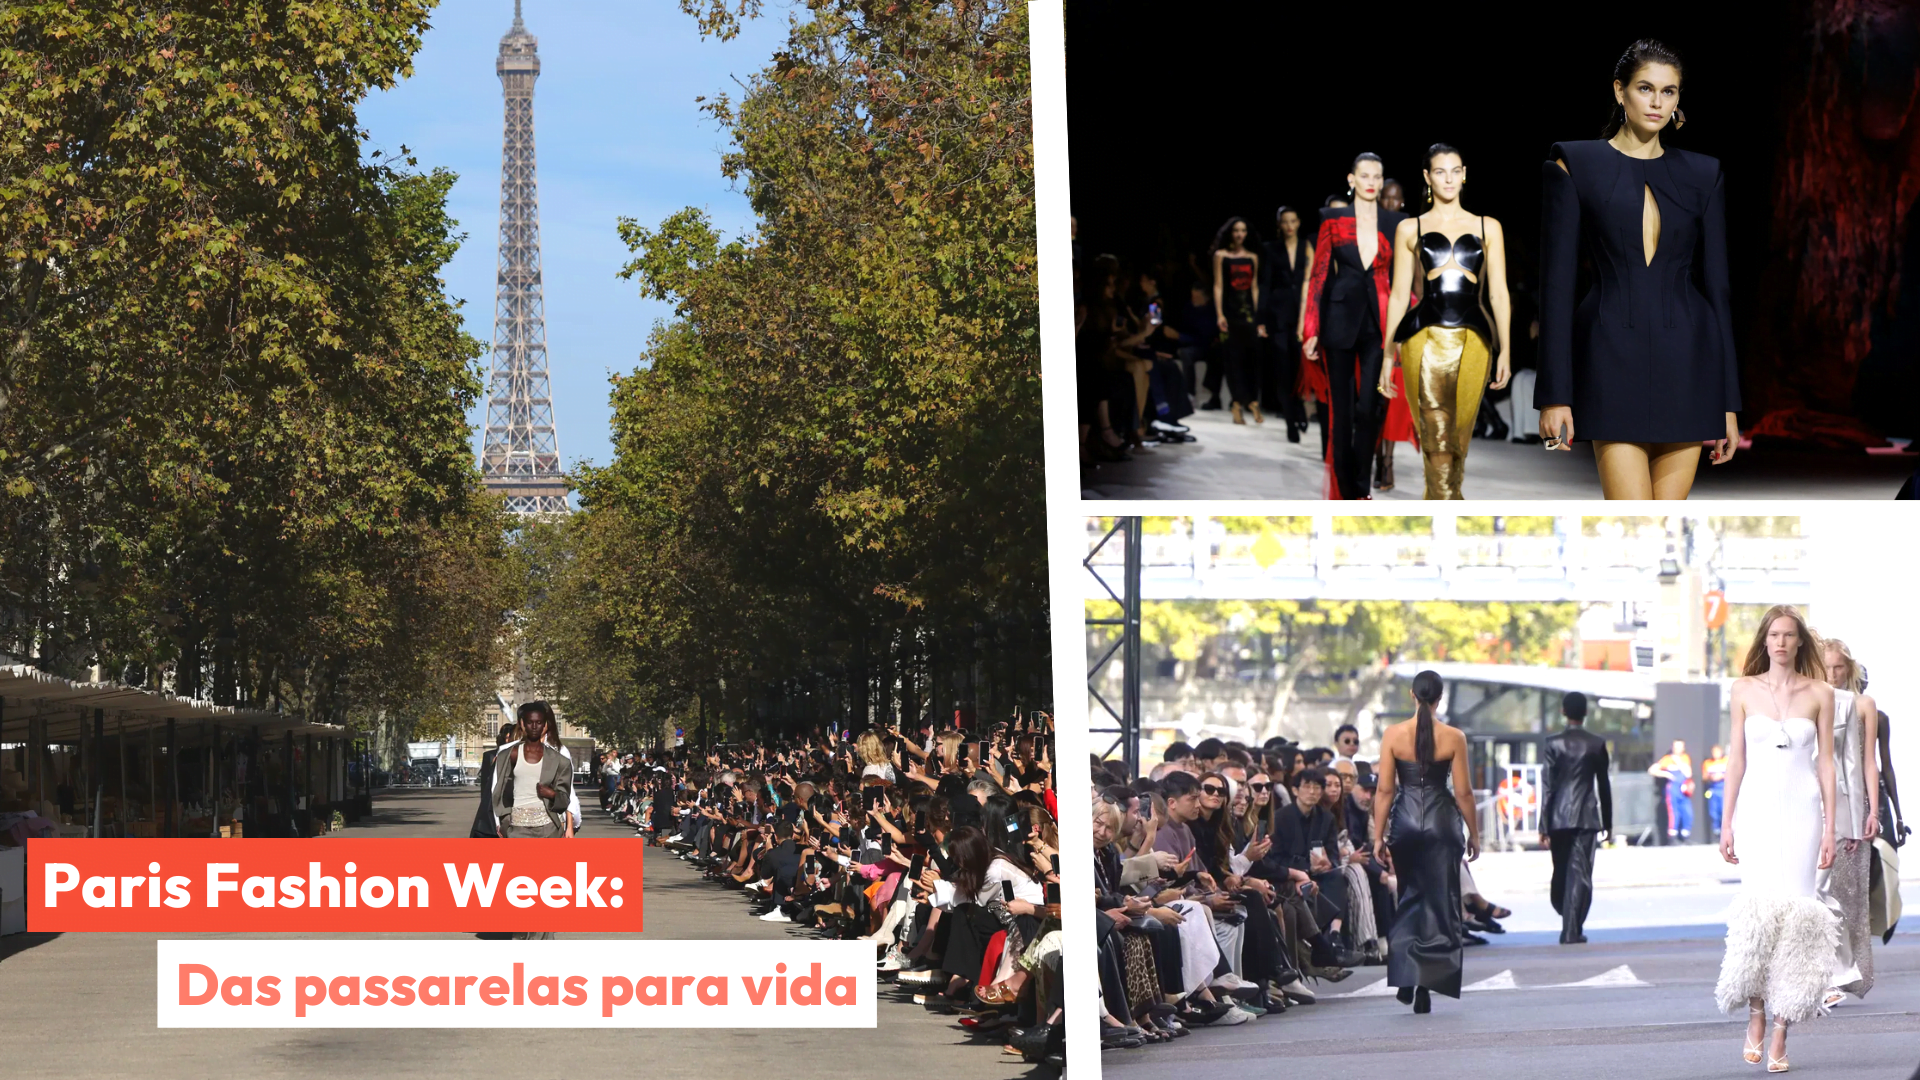 Imagem com fotos de Paris e desfiles para indicar a fashion week realizada em outubro.